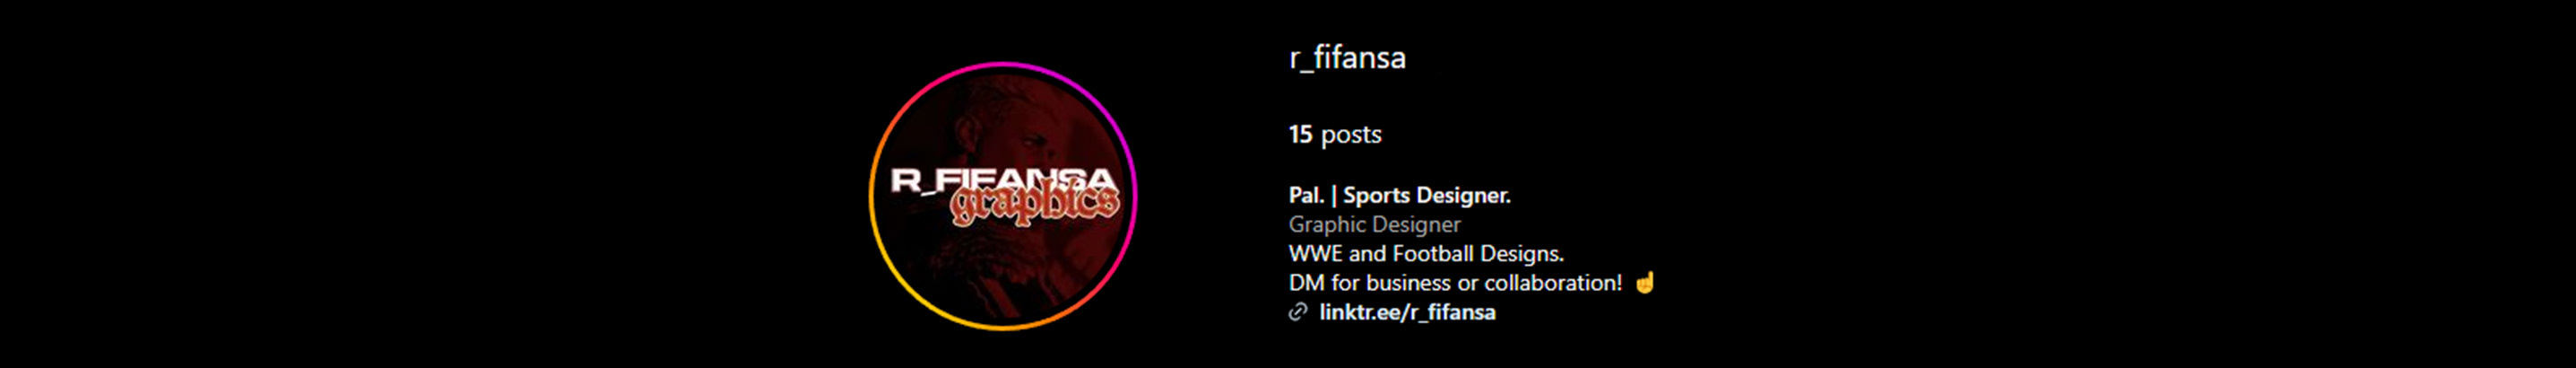 Naufal Rafifansa's profile banner